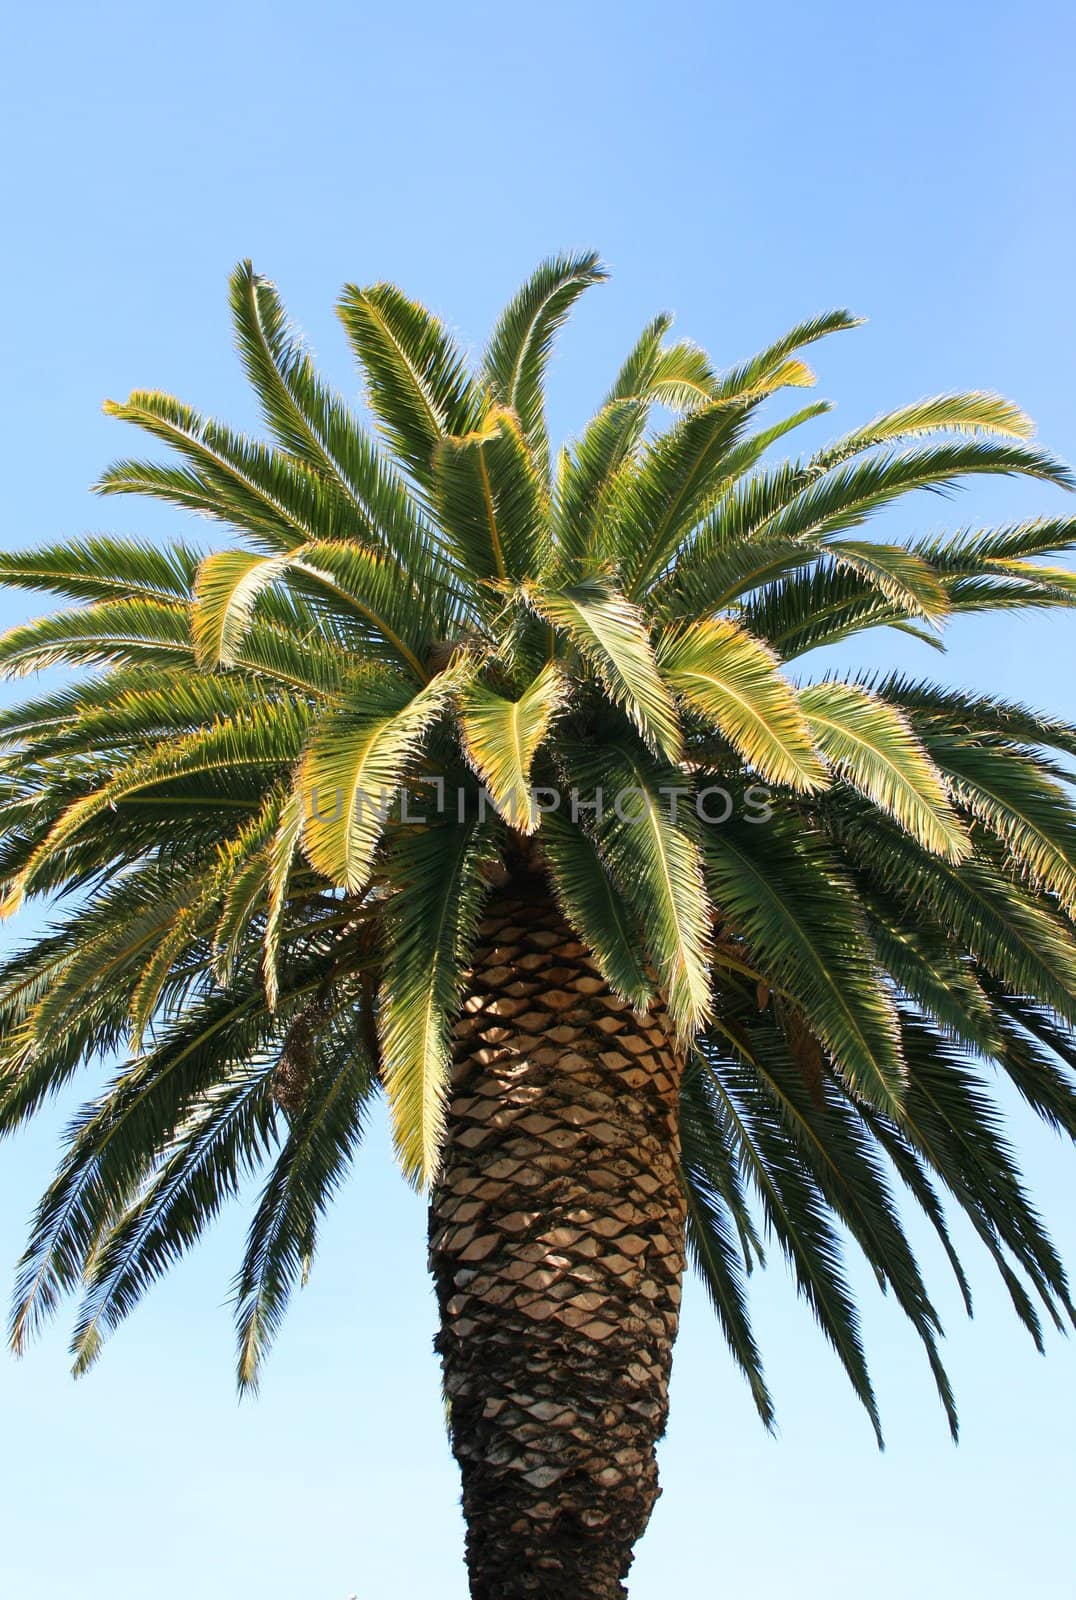 Tropical palm tree close up over blue sky.
